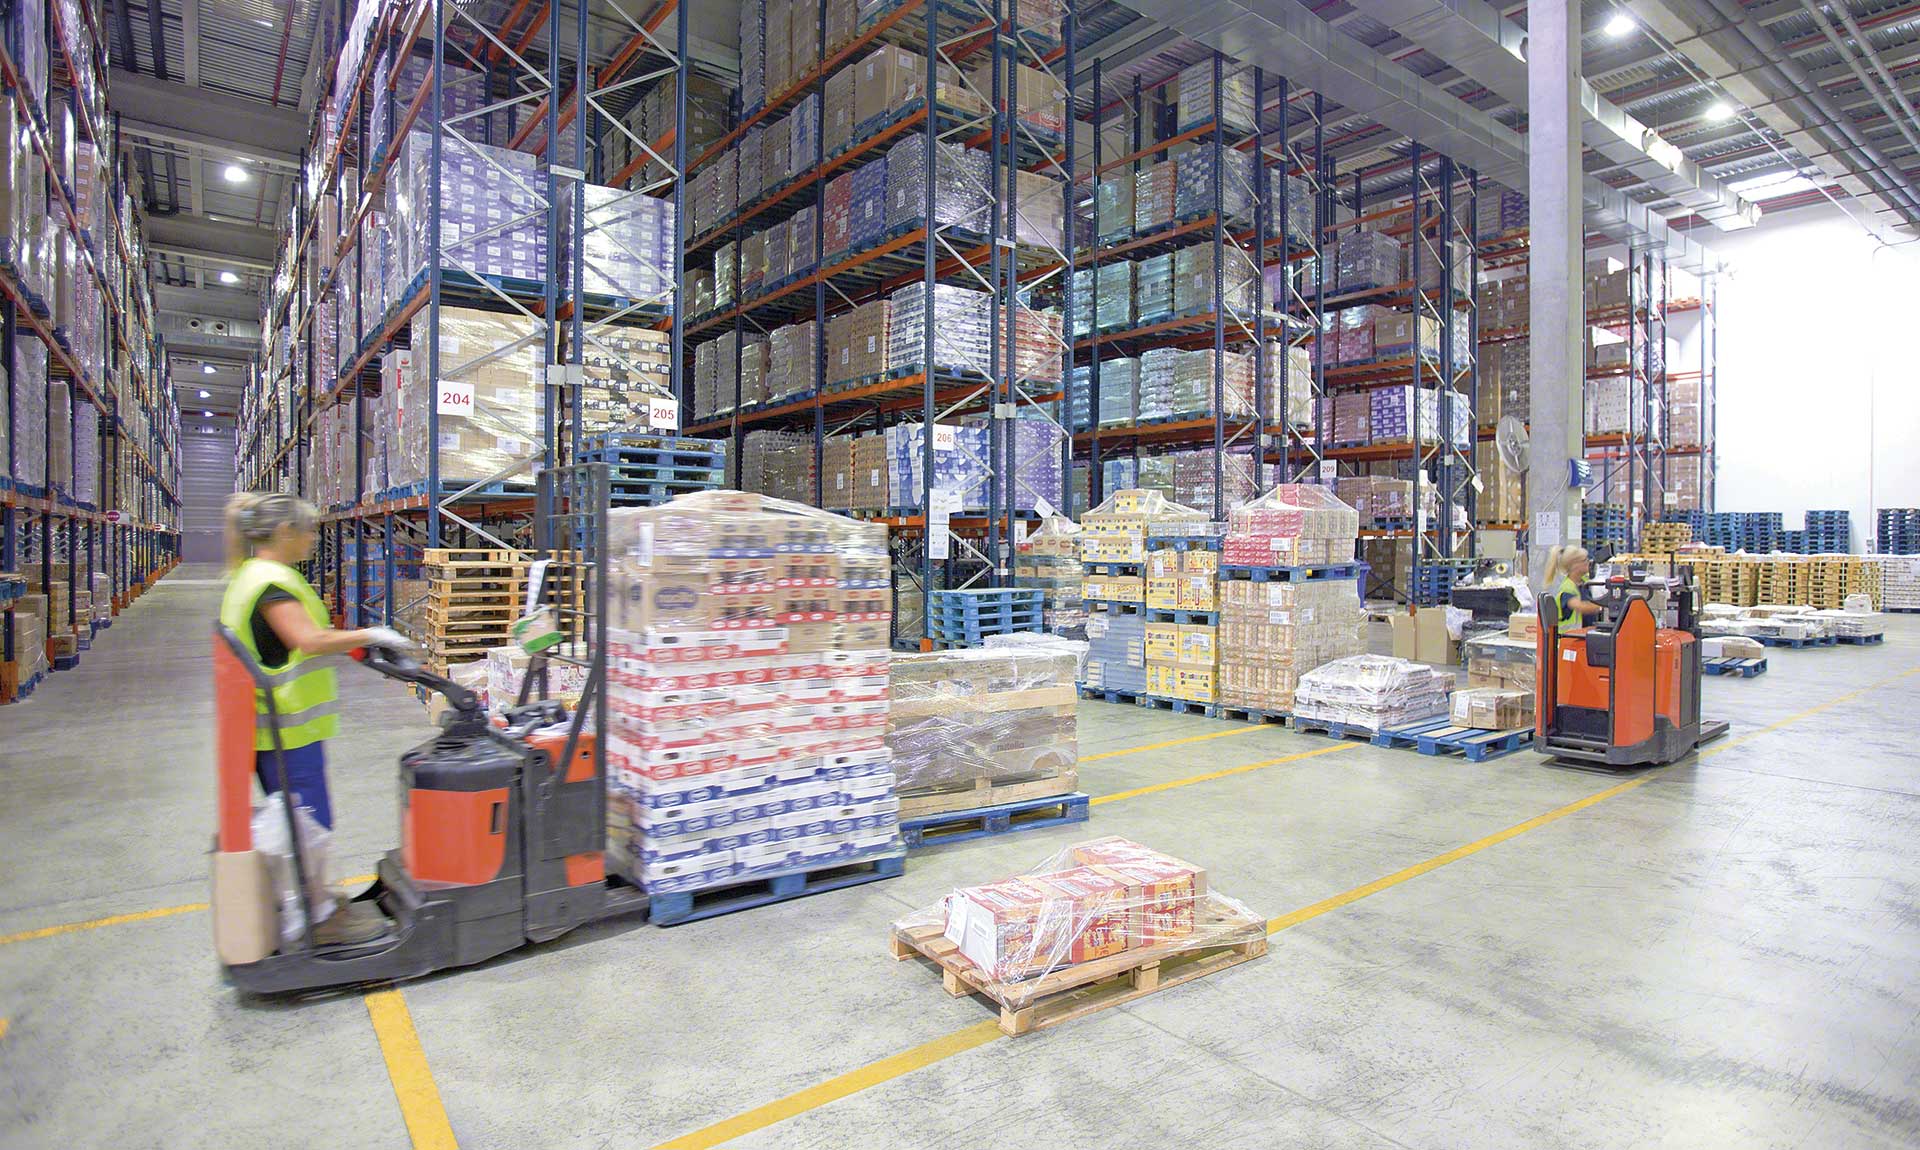 Het consolidatiemagazijn is een logistieke faciliteit die individuele bestellingen consolideert tot grotere verzendingen